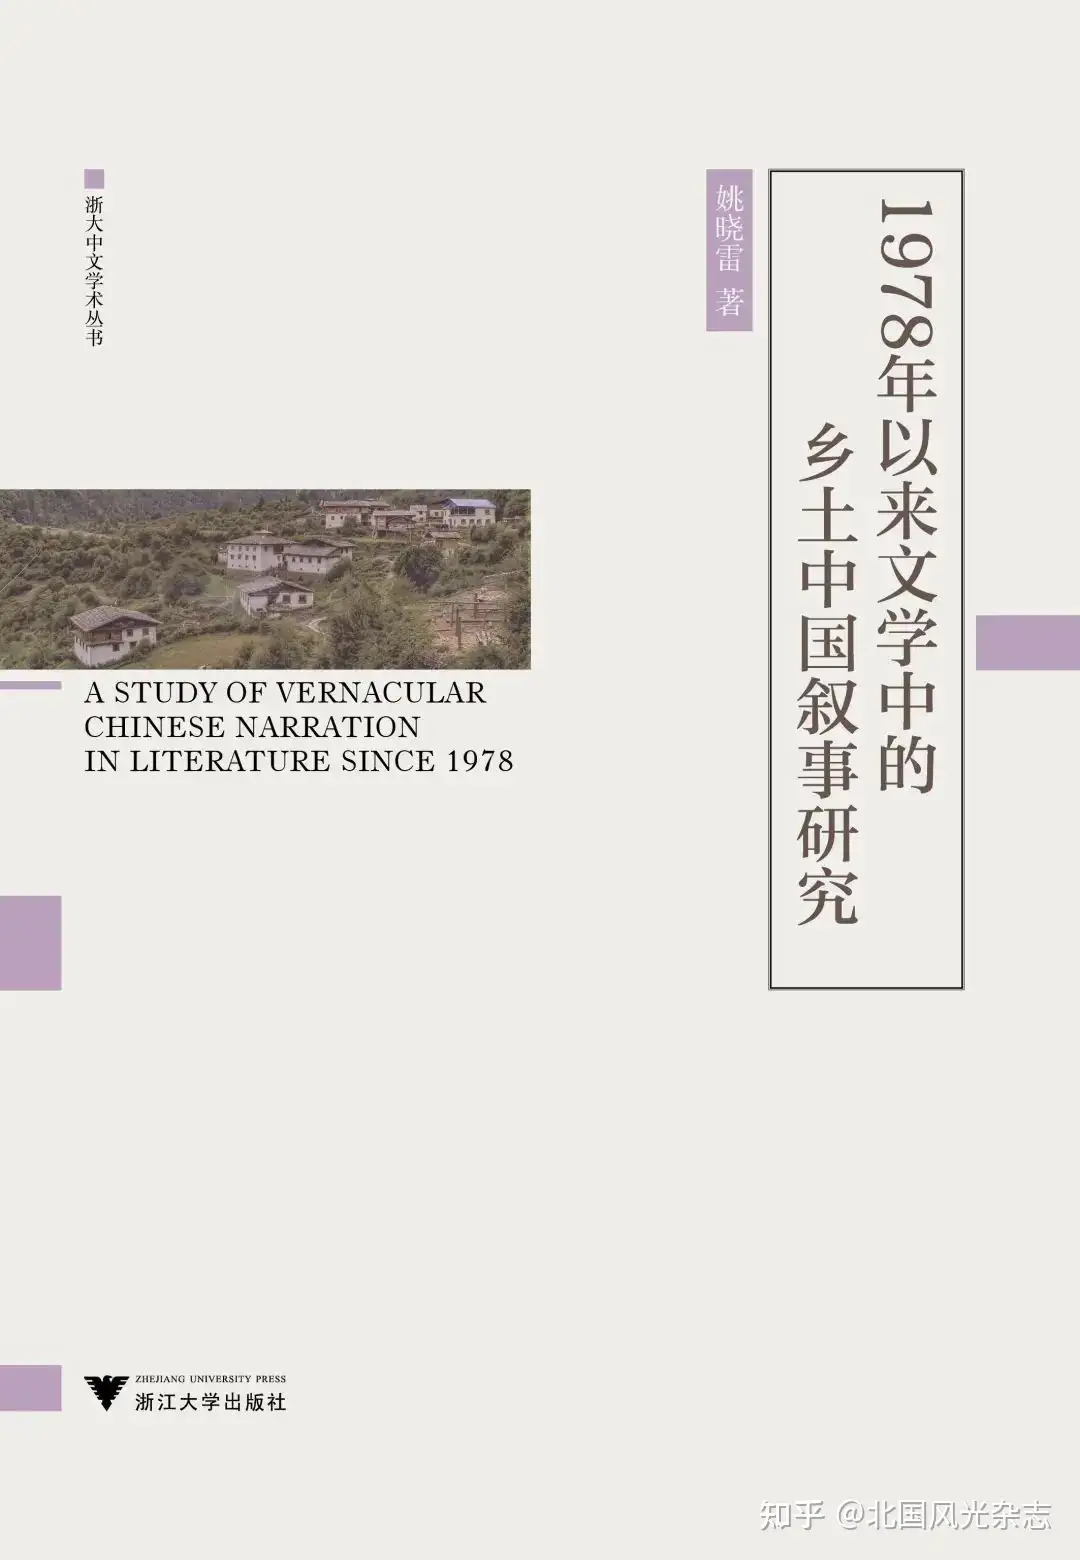 陈思和、姚晓雷、陈国和| 关于《1978年以来文学中的乡土中国叙事研究